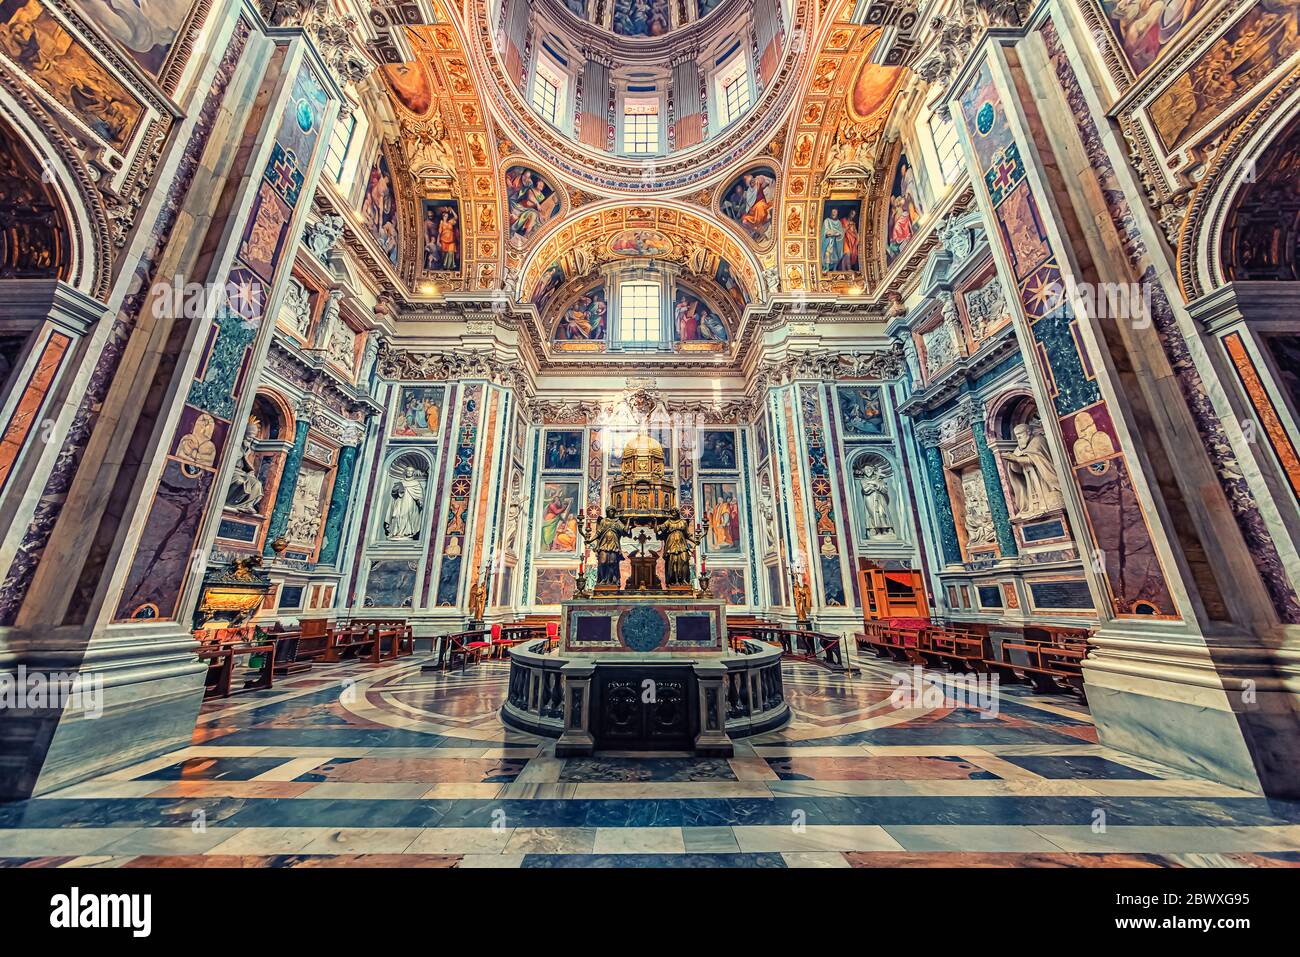 Inside the Basilica Papale di Santa Maria Maggiore in Rome Stock Photo